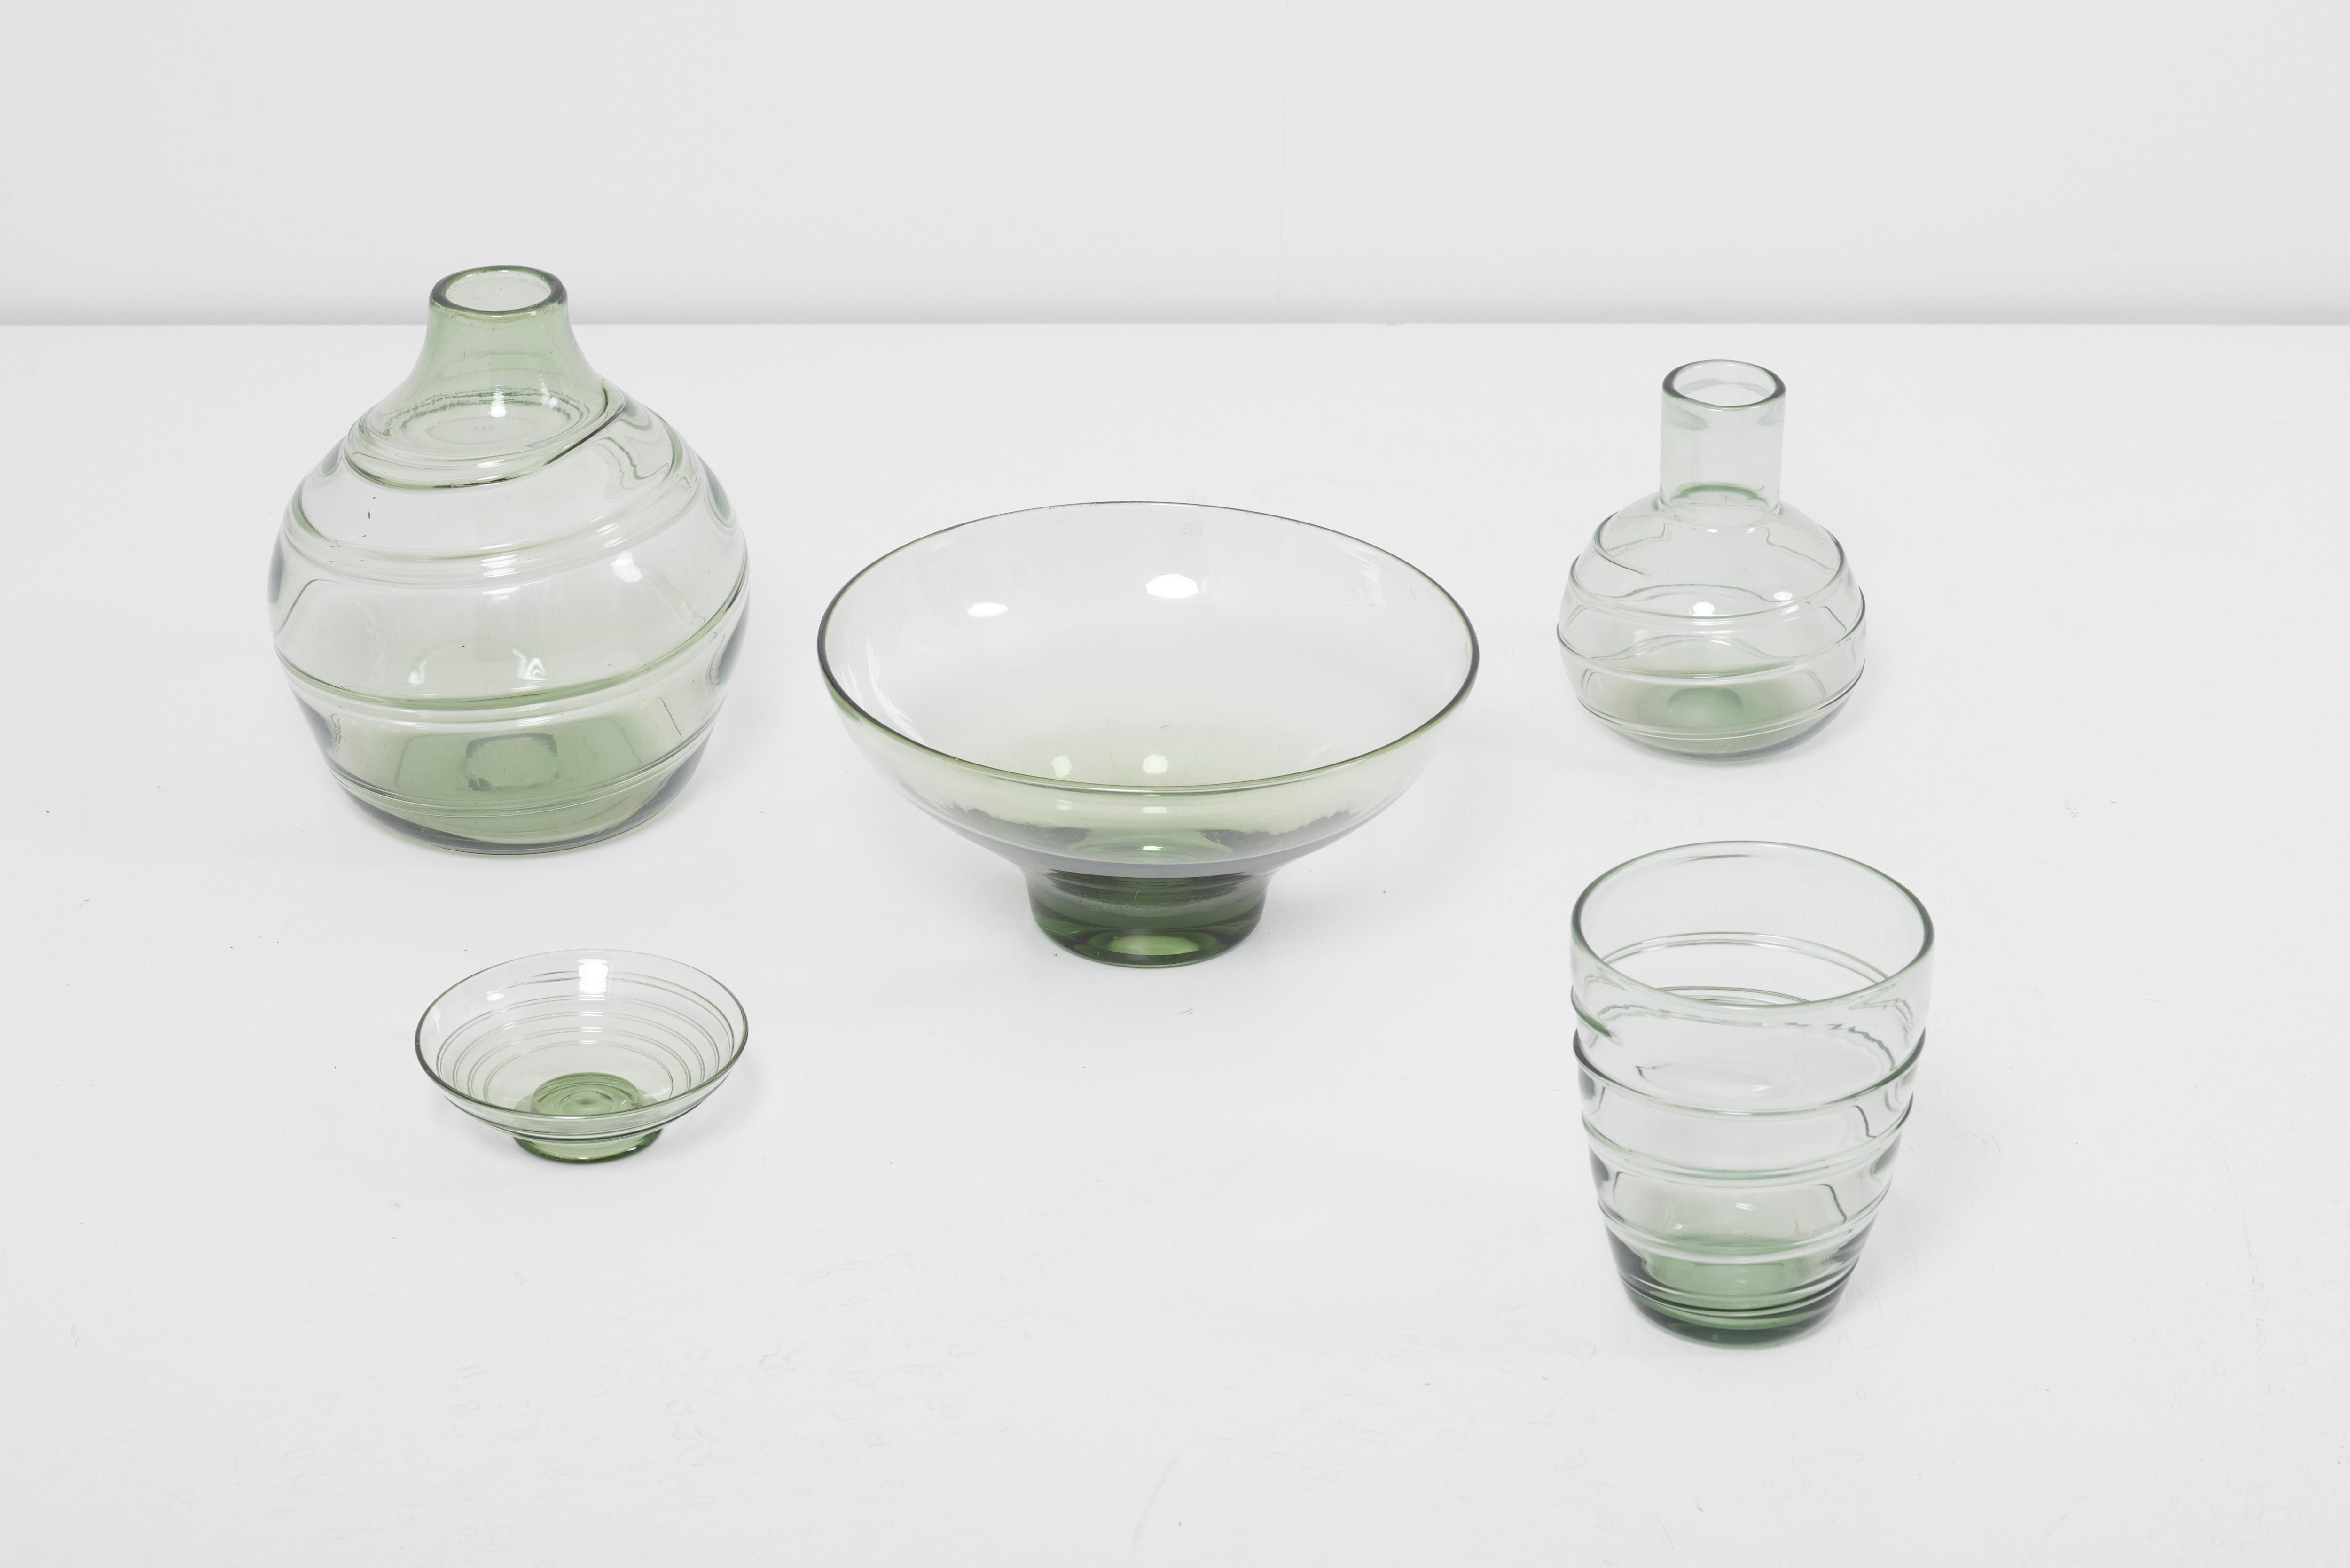 Collection de vases et de bols en verre à ruban en vert.
Conçu dans les années 1930 par Barnaby Powell pour Whitefriars, Royaume-Uni.
Les dimensions indiquées s'appliquent au plus grand vase.